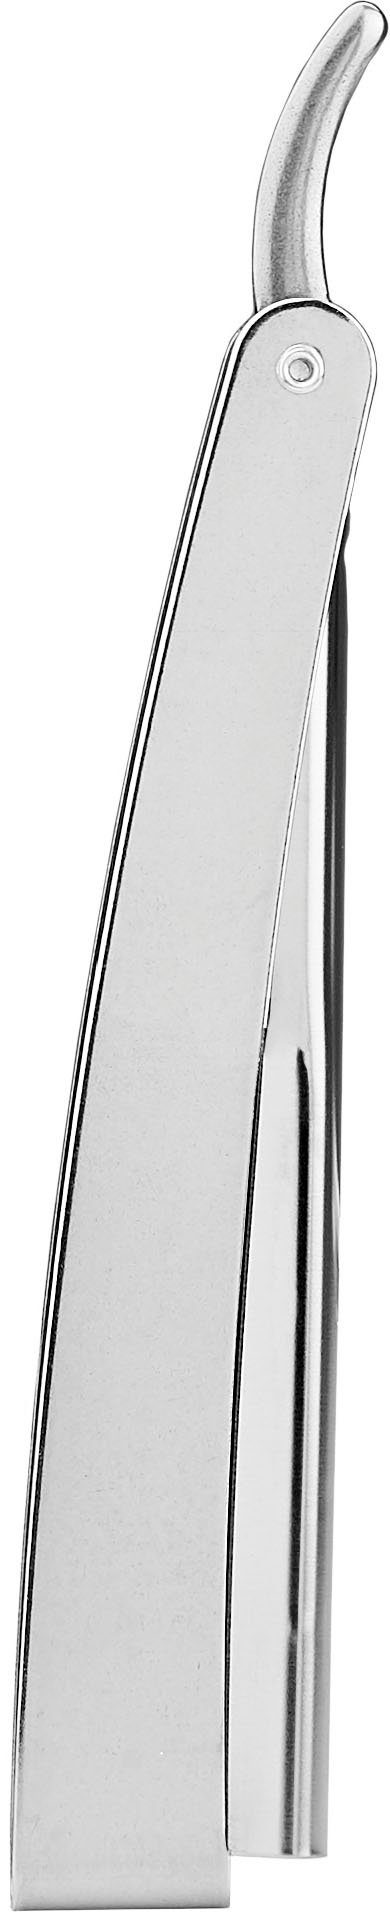 FRIPAC 1955 Rasiermesser silberfarben, mit Klappgriff Rasiermesser praktischem